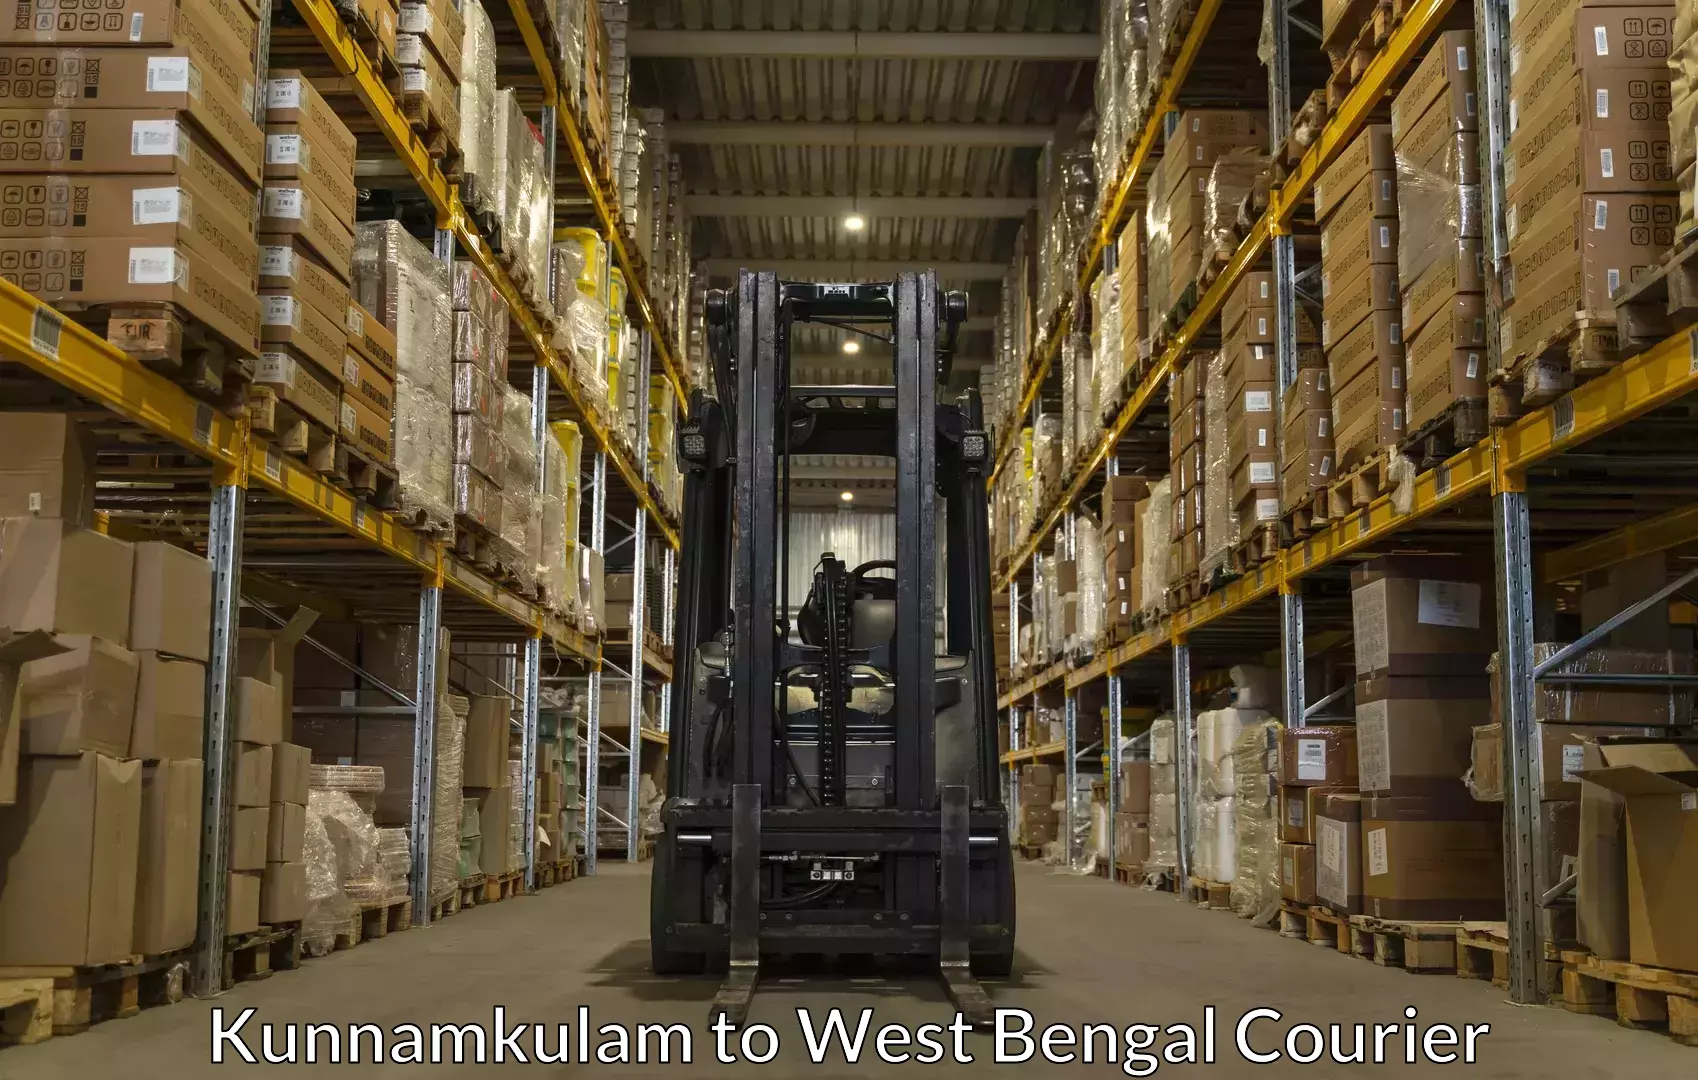 Baggage shipping experts Kunnamkulam to Contai